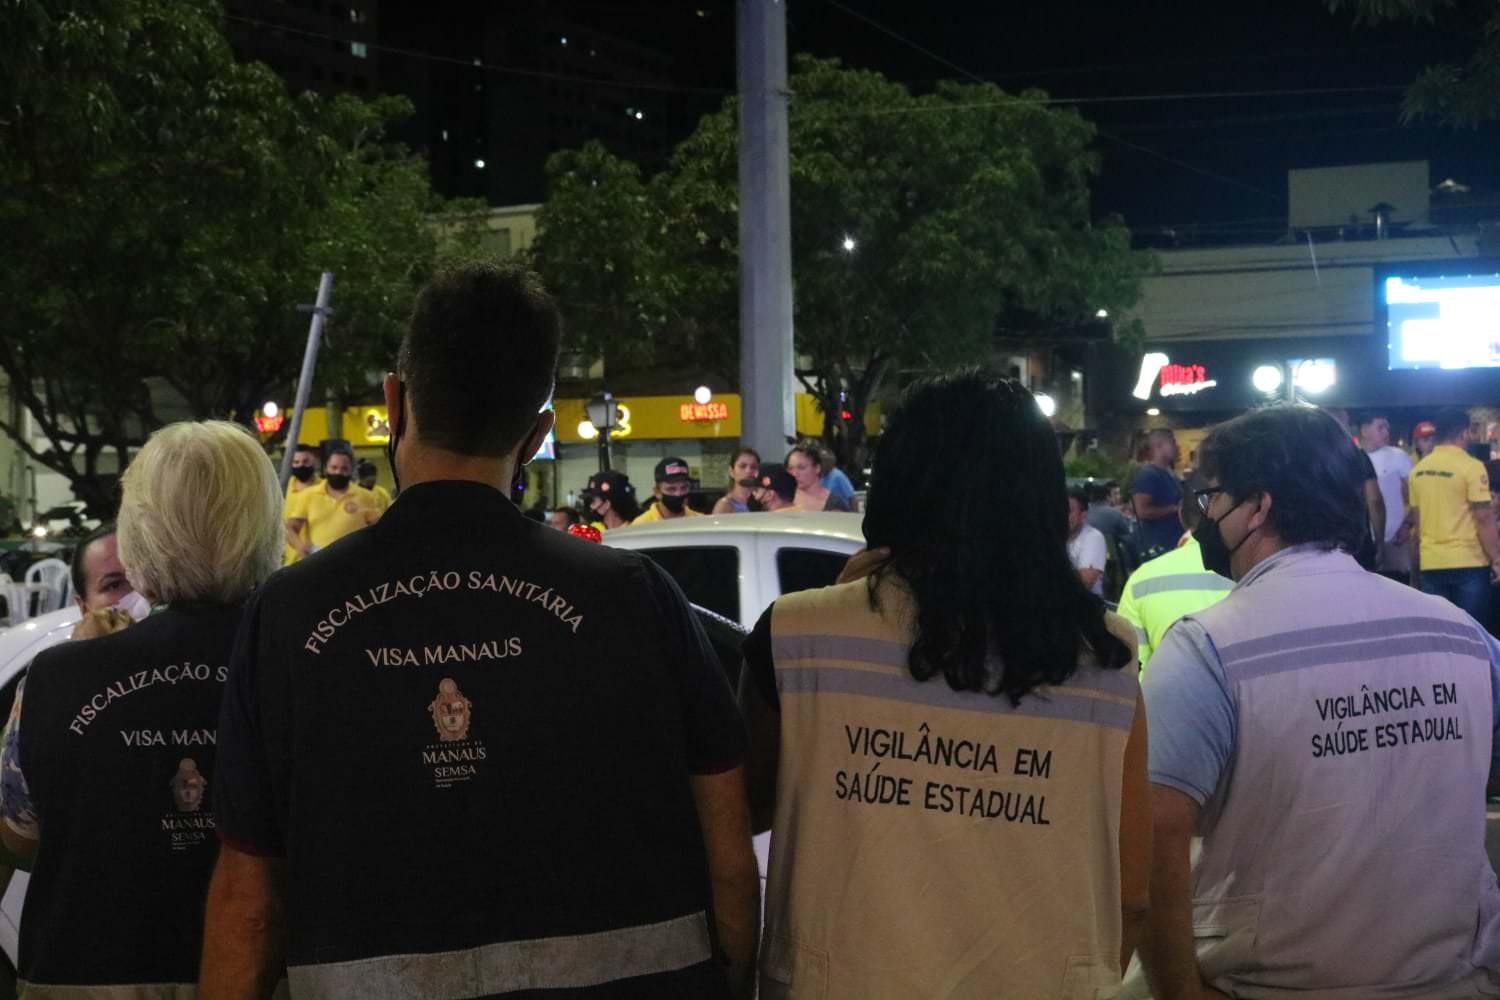 Festa clandestina com cerca de 500 pessoas é encerrada em Manaus